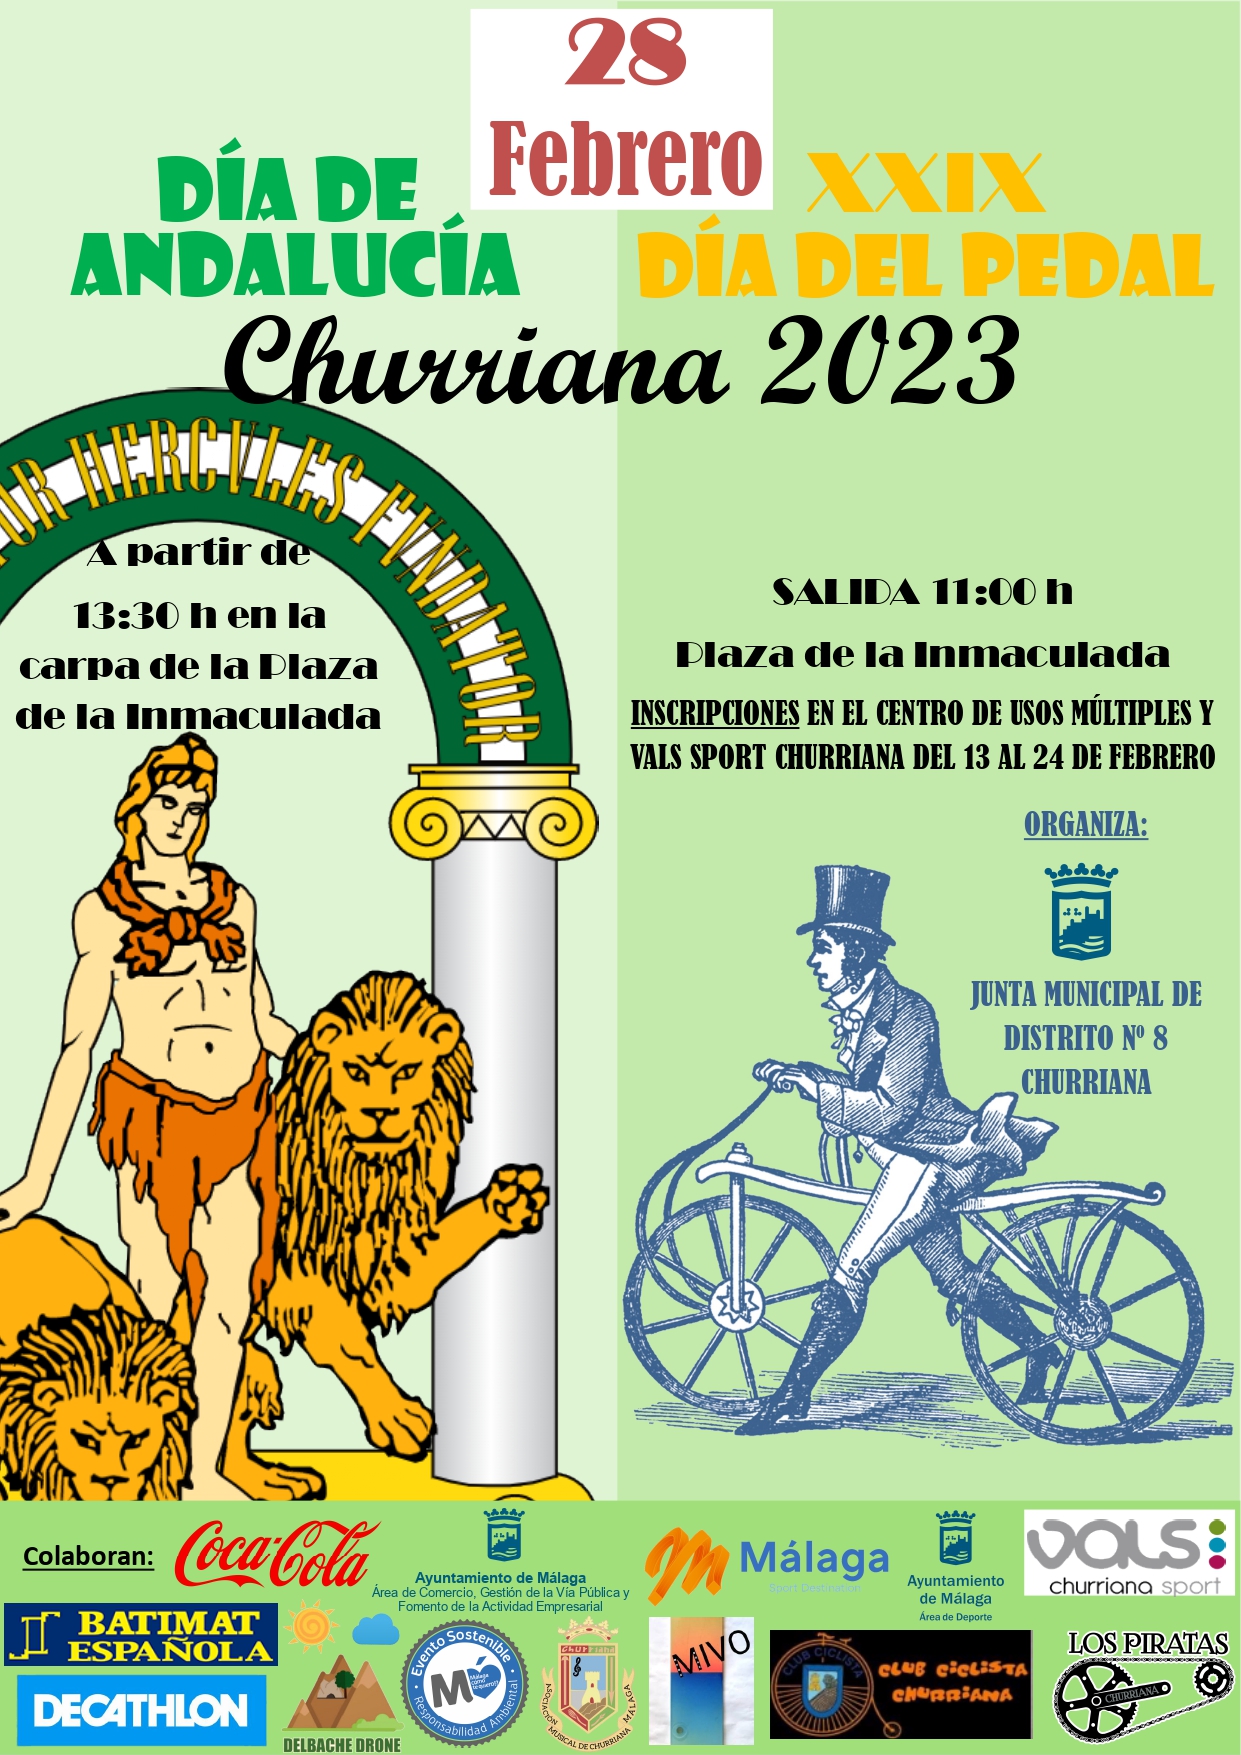 DÍA ANDALUCIA Y DIA DEL PEDAL 2023